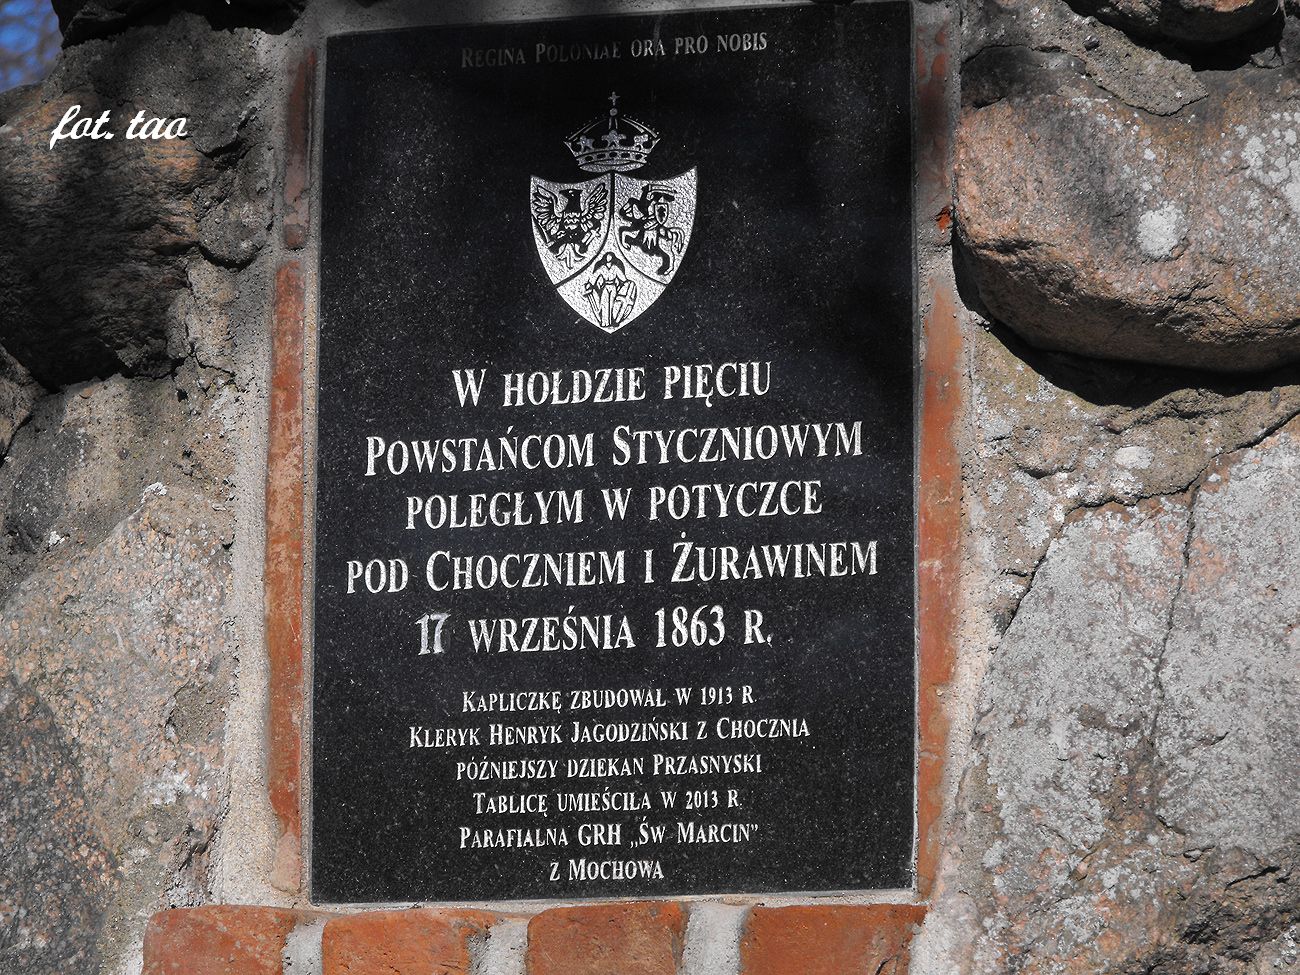 Niedzielna wycieczka do Chocznia. Tablica informacyjno-pamiątkowa  na pomniku nad Skrwą, luty 2014 r.